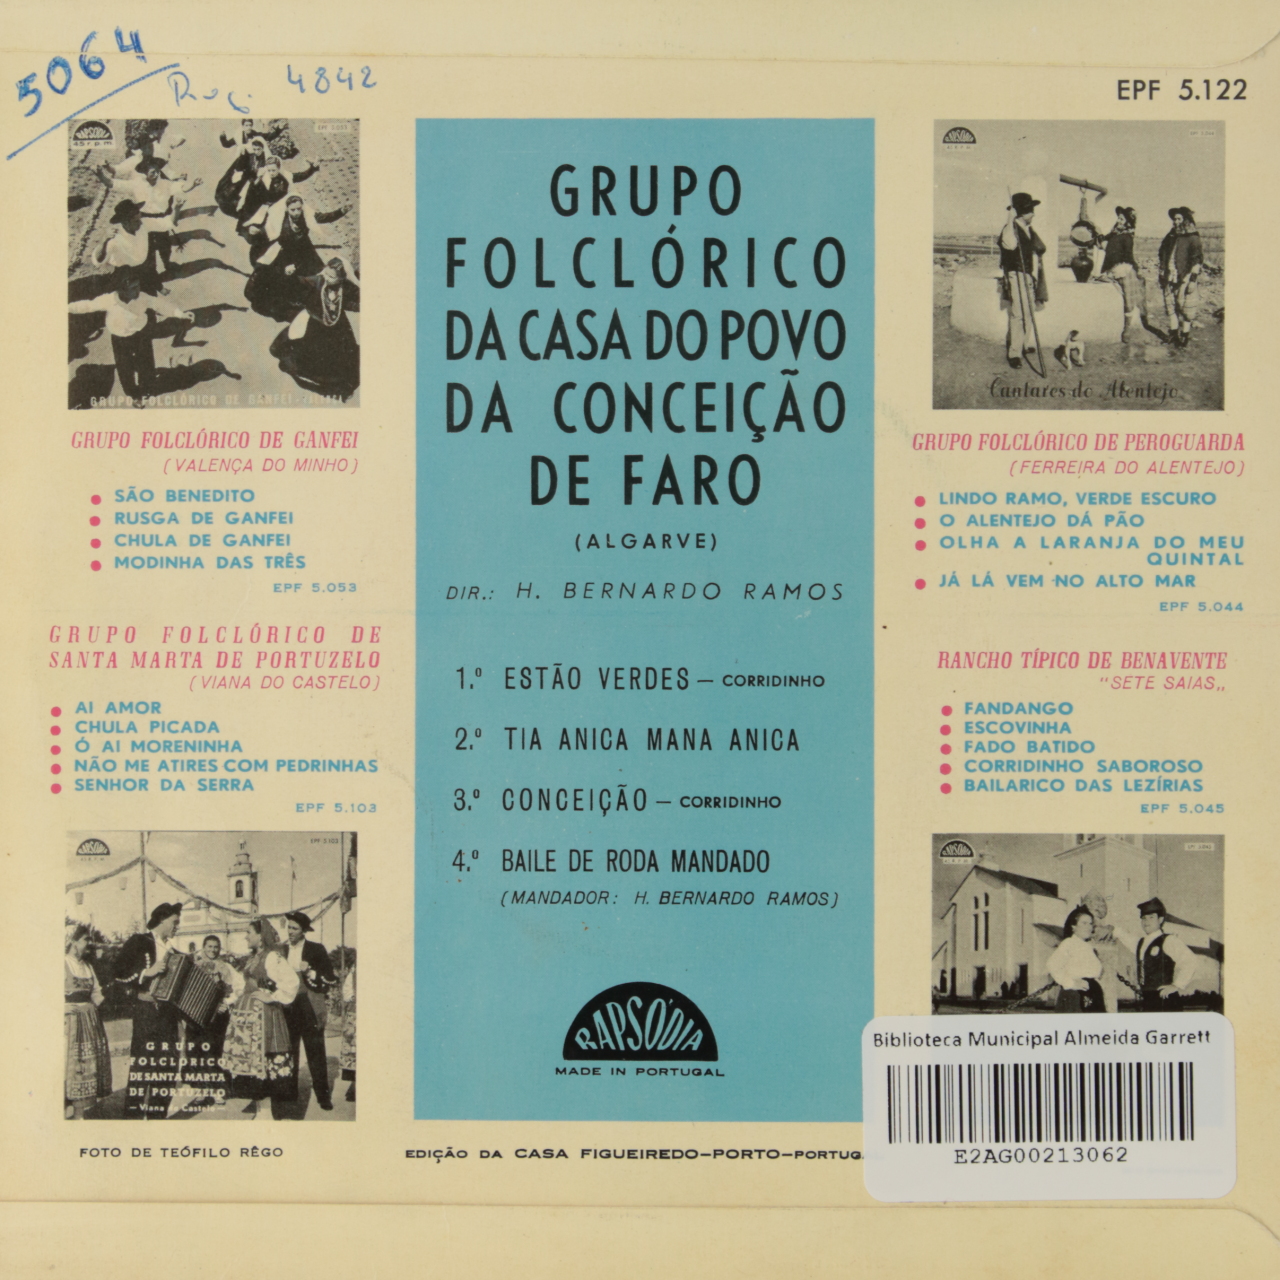 Grupo Folclórico da Casa do Povo da Conceição de Faro